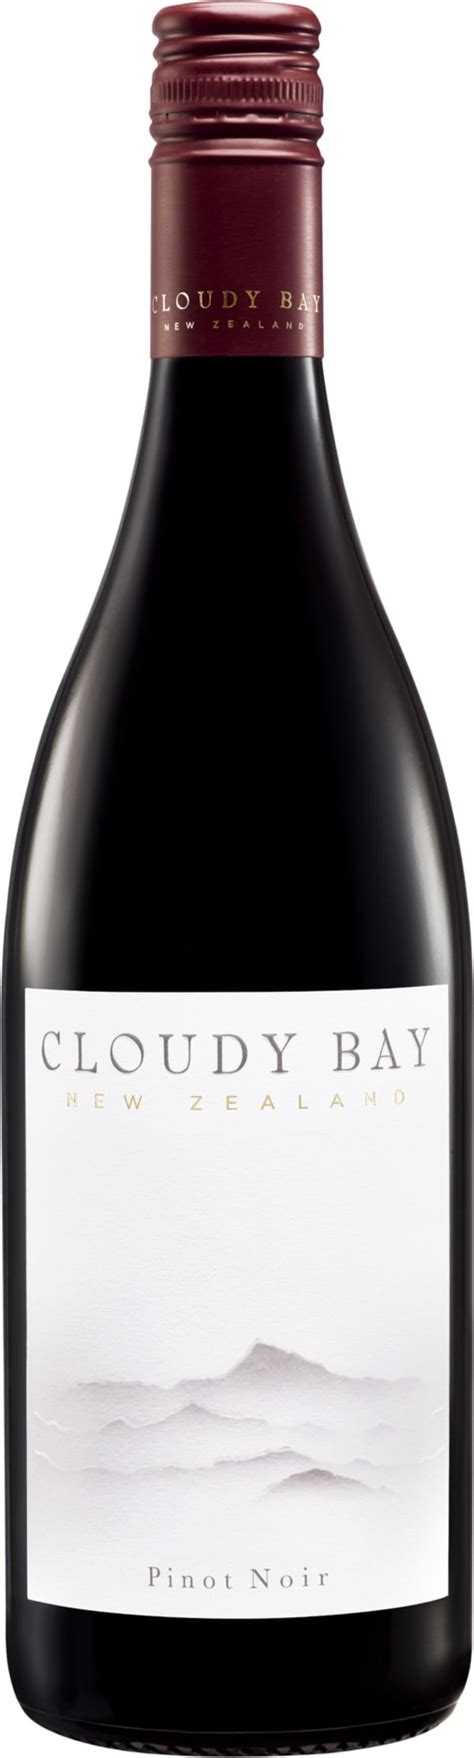 Cloudy Bay Pinot Noir 2020 Alko